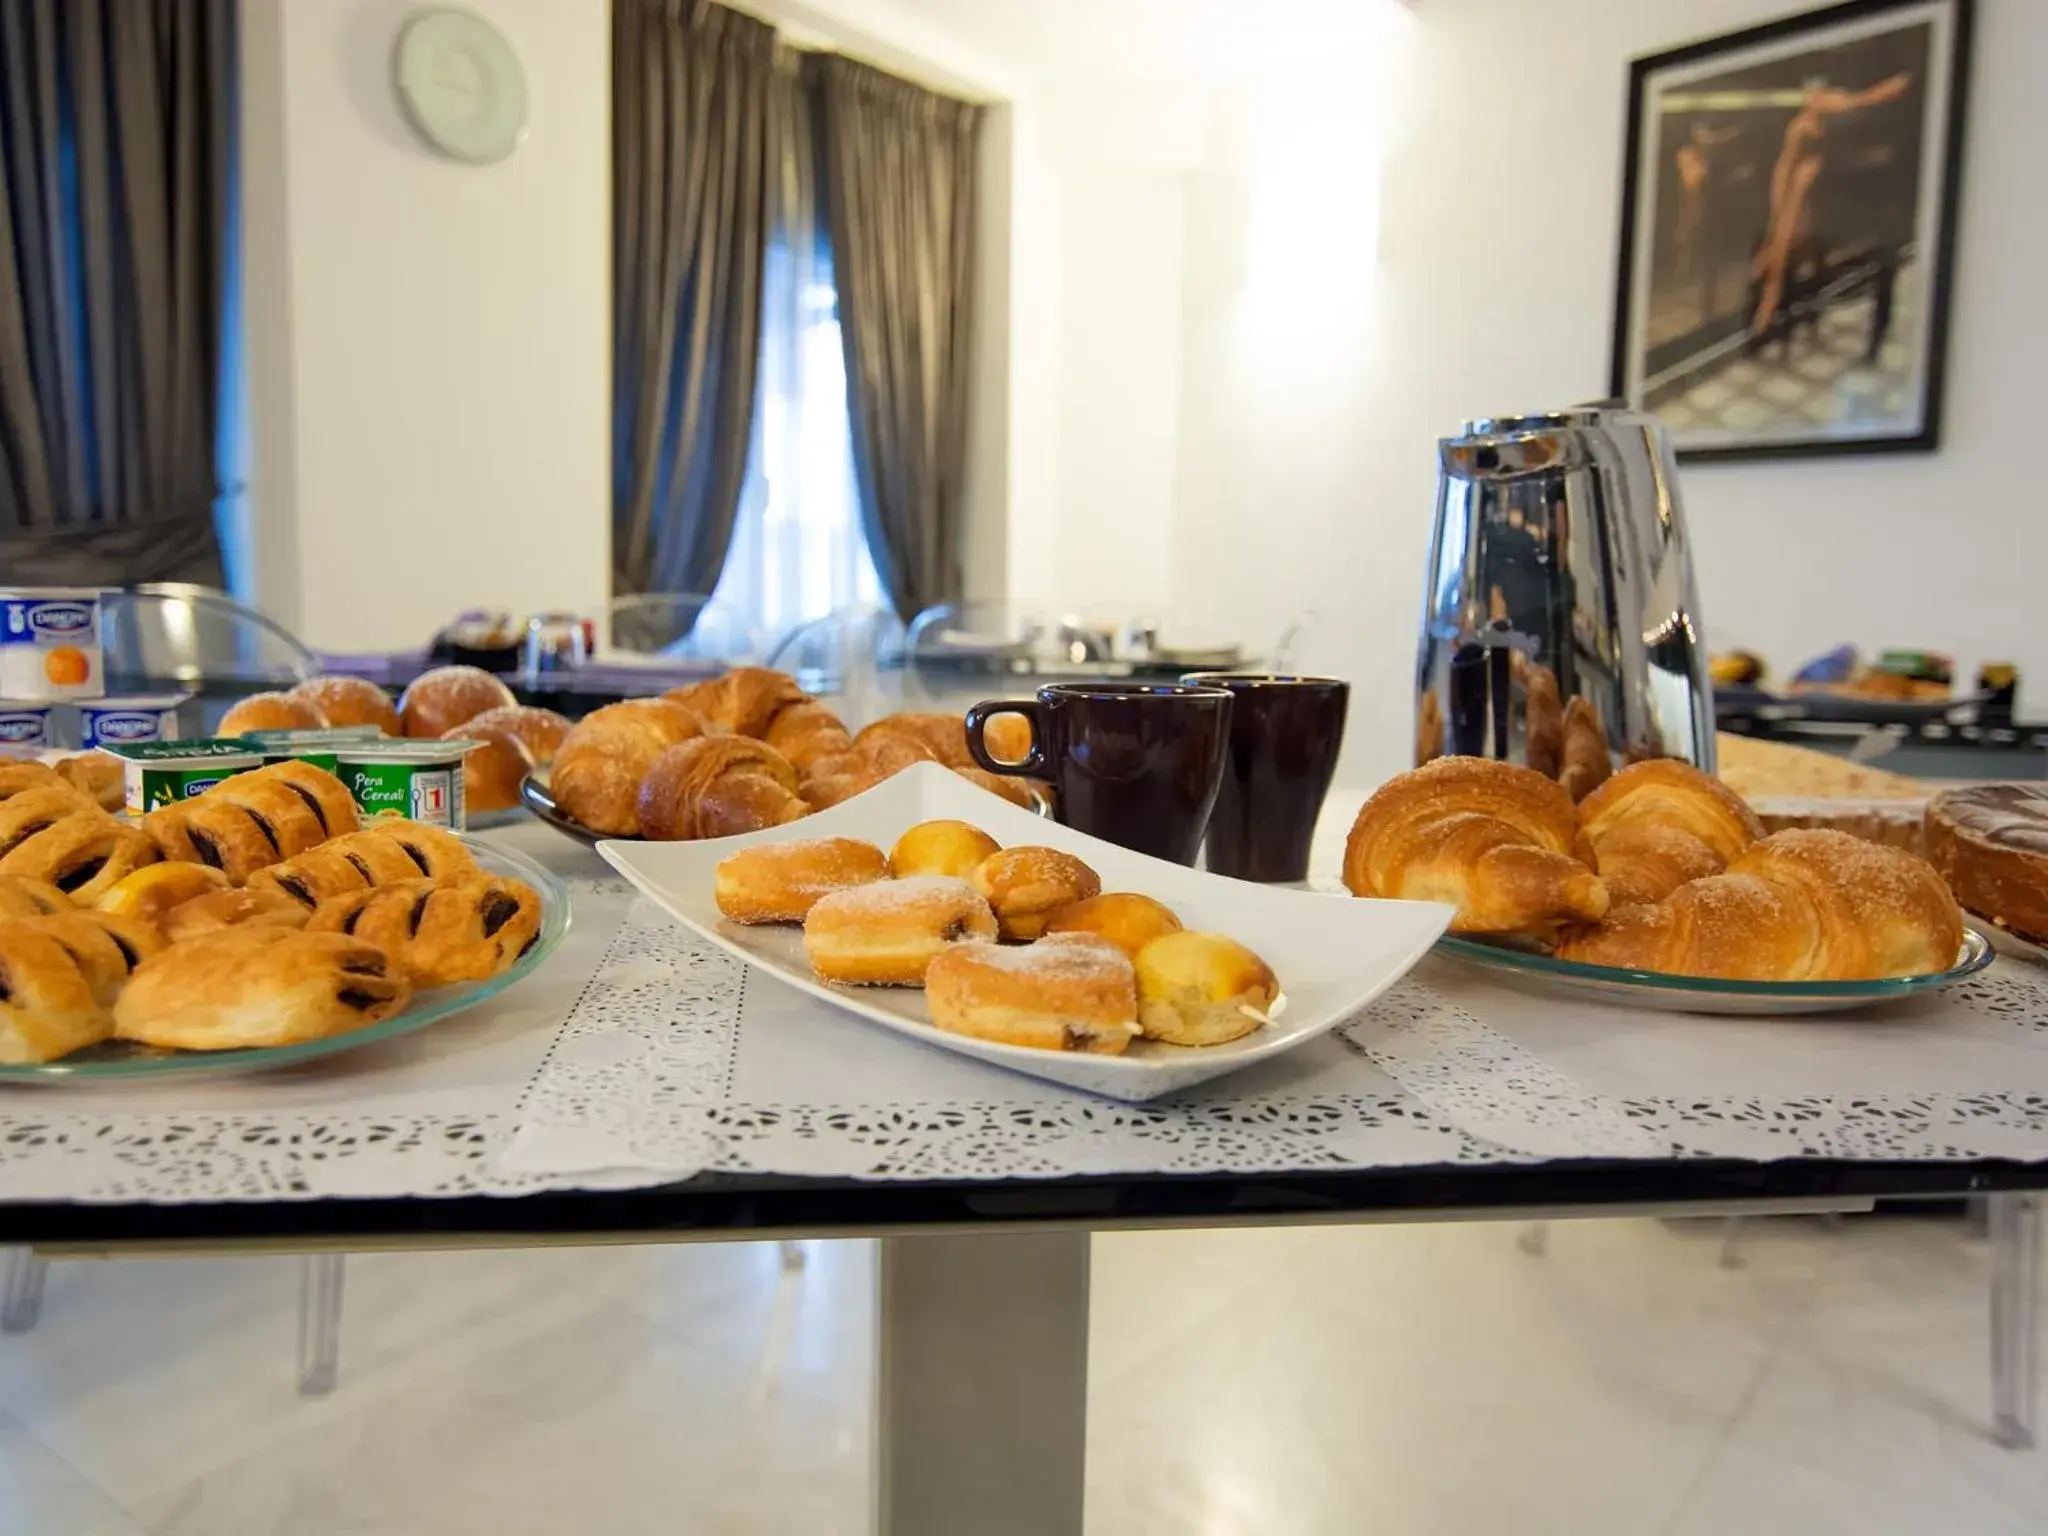 Buffet breakfast in Golden Hotel